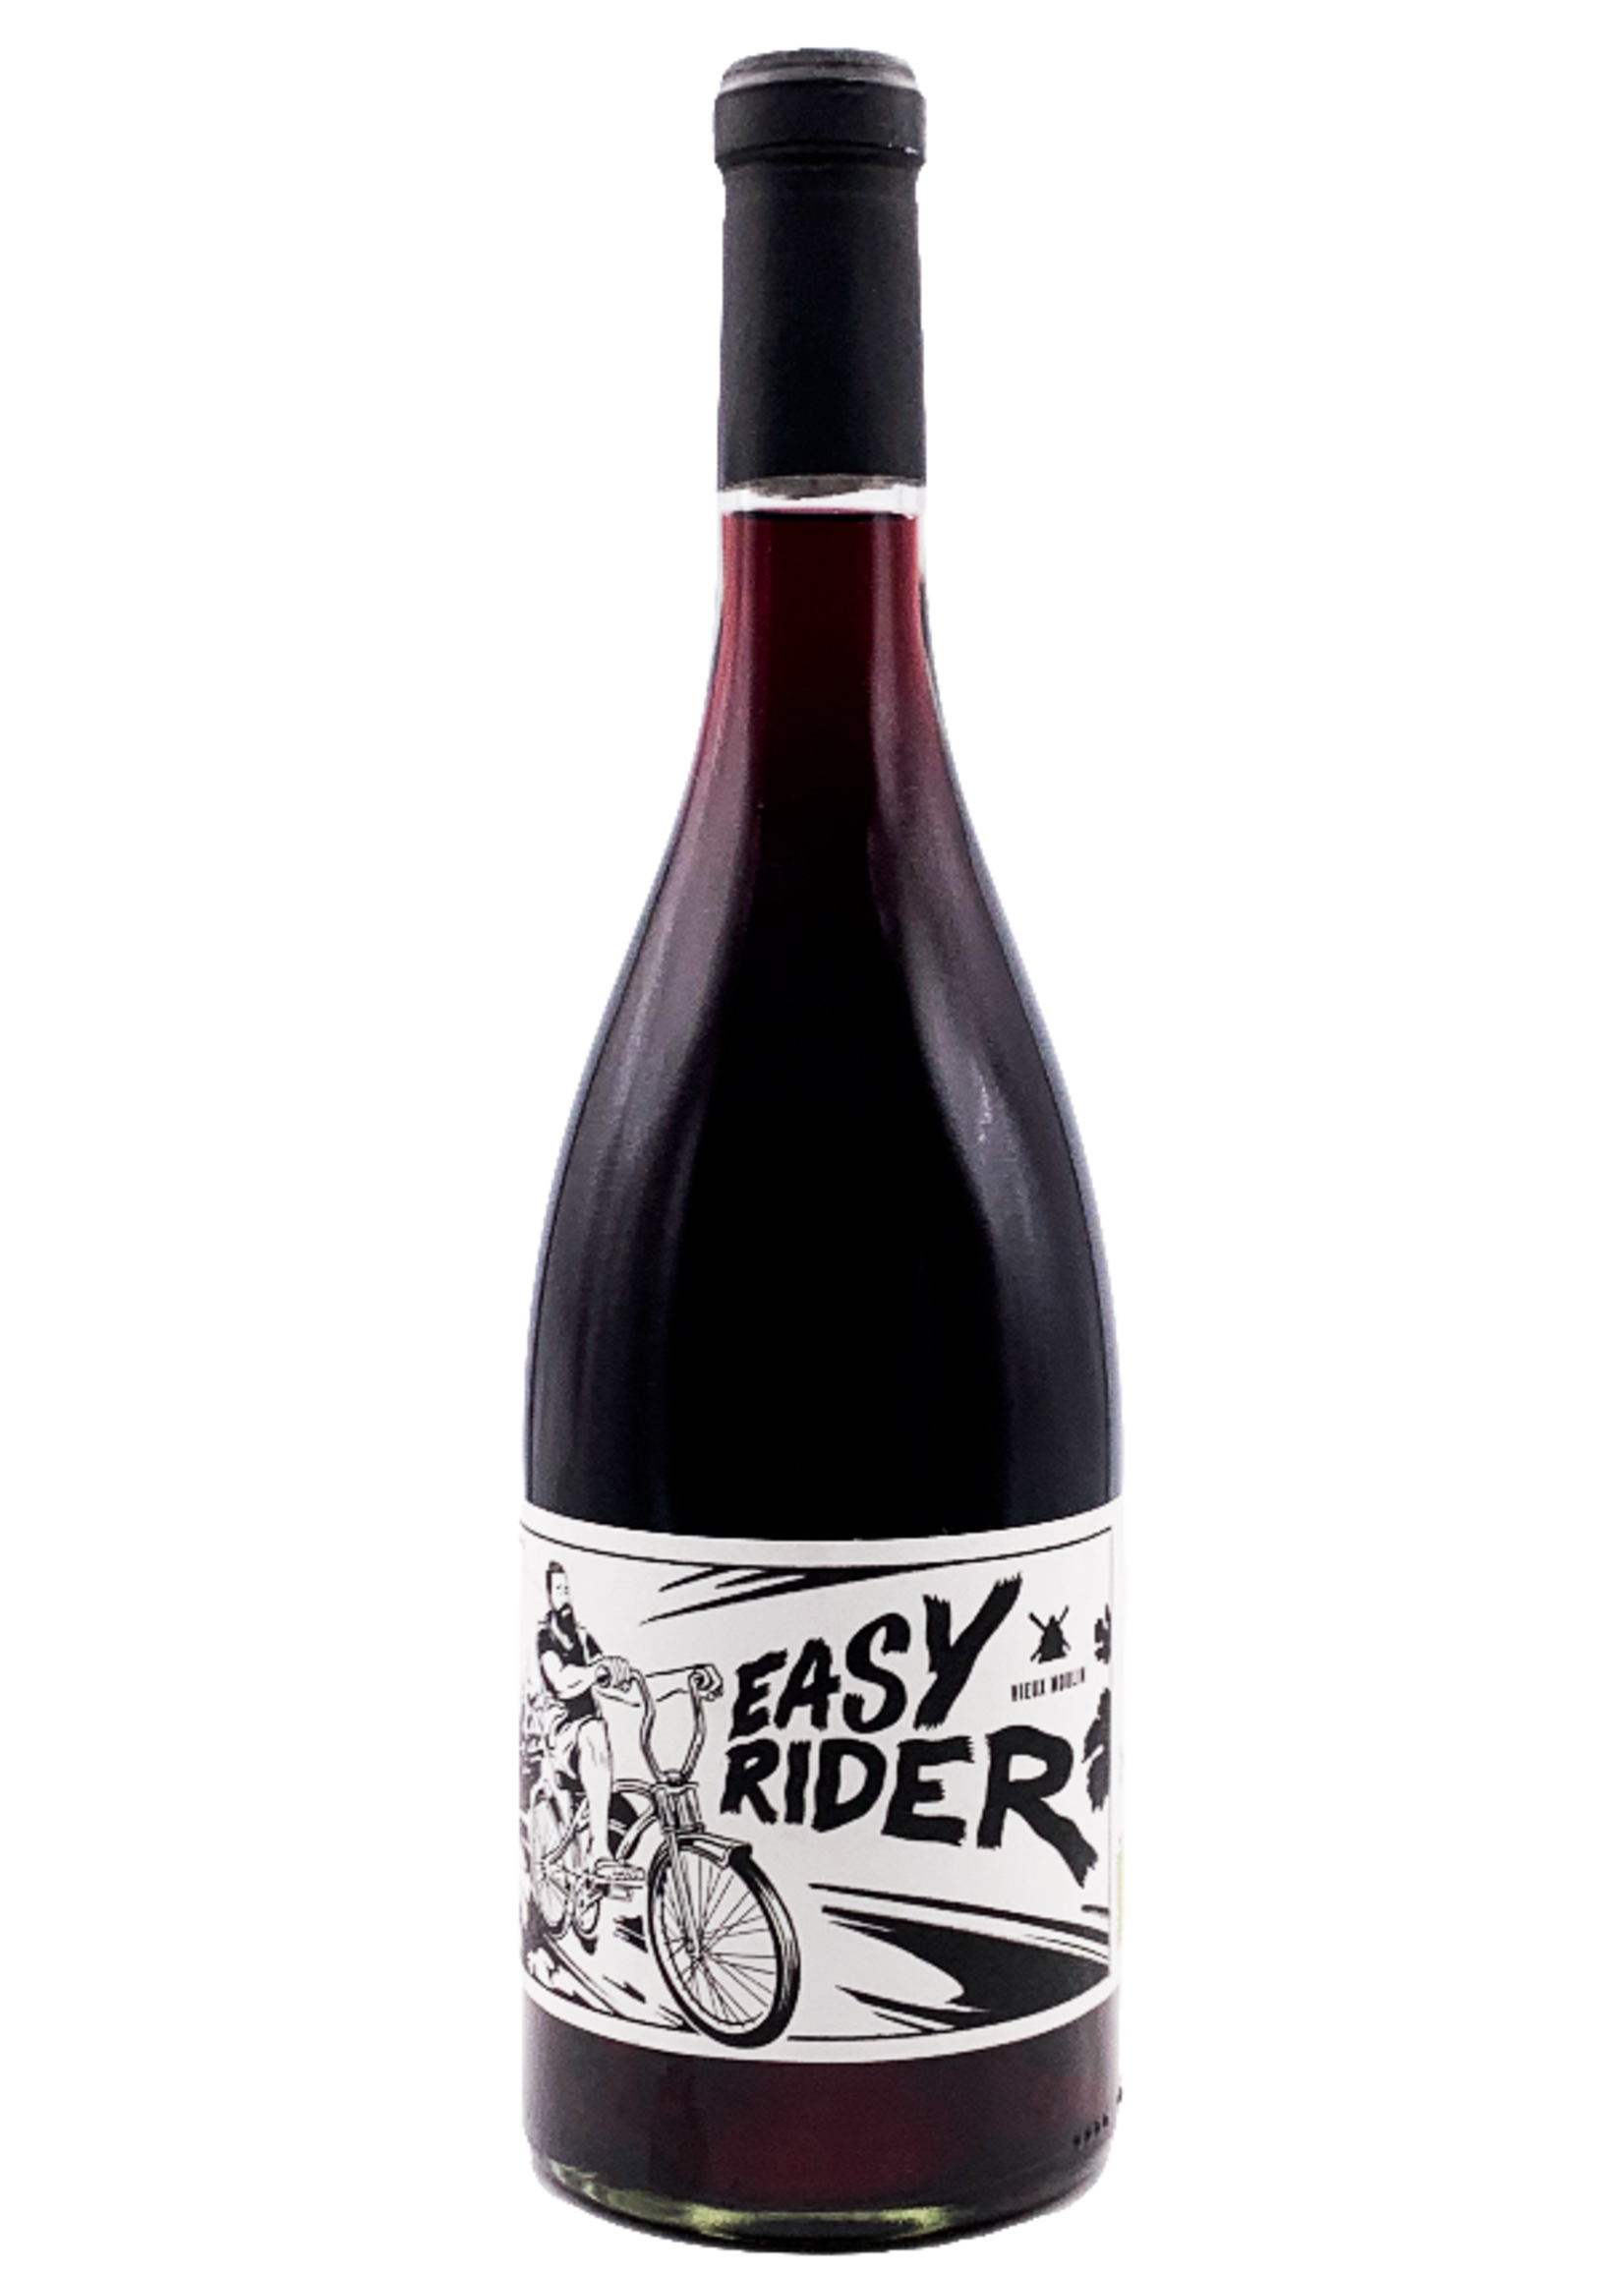 Vin de France "Easy Rider" 2021 Chateau Vieux Moulin